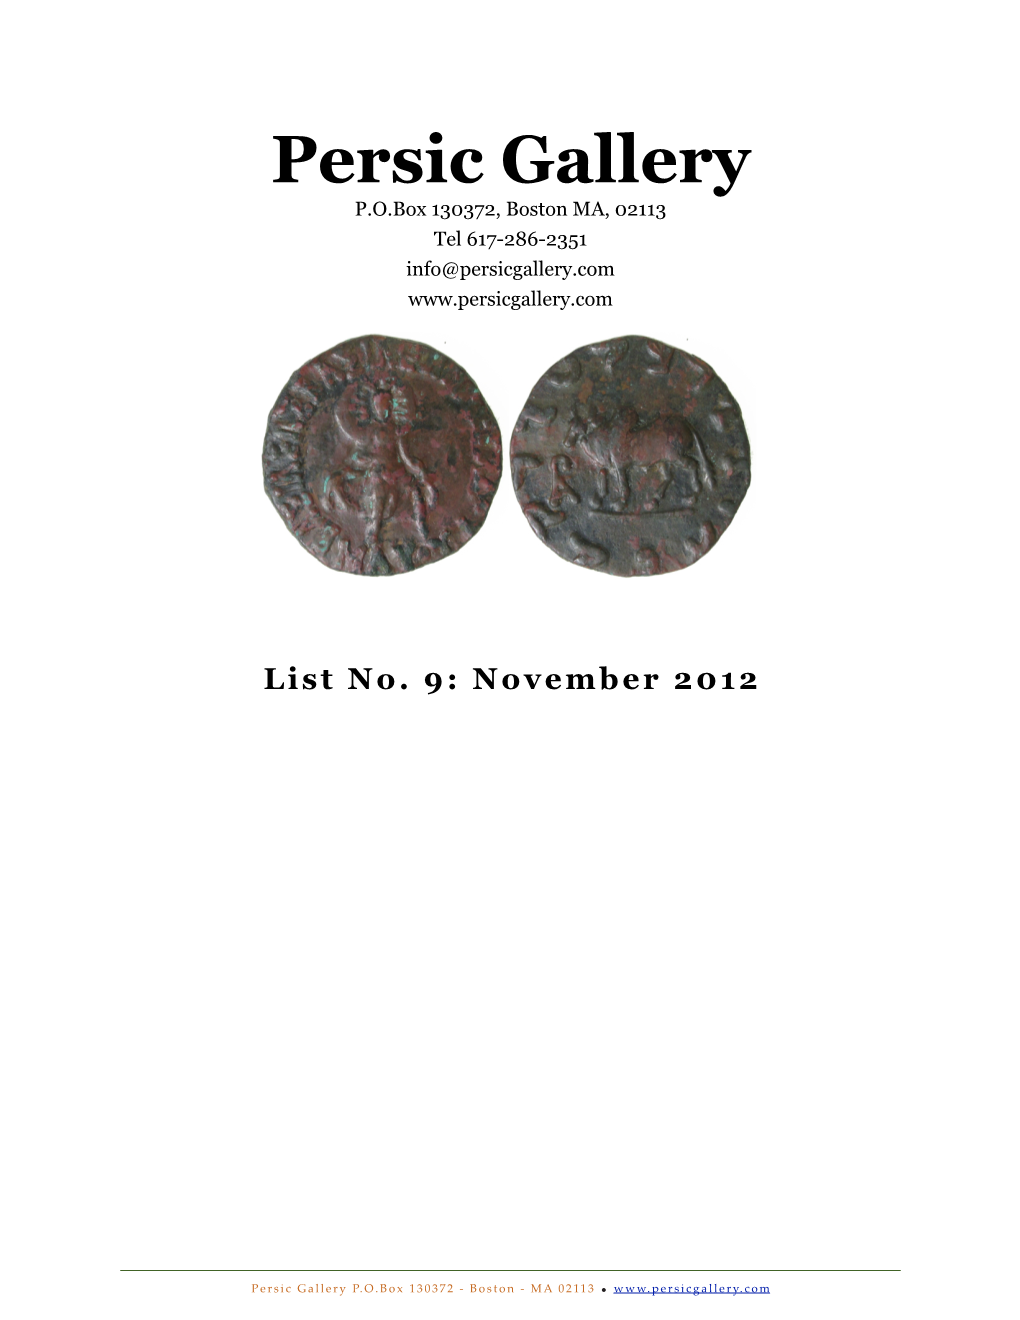 Persic Gallery P.O.Box 130372, Boston MA, 02113 Tel 617-286-2351 Info@Persicgallery.Com